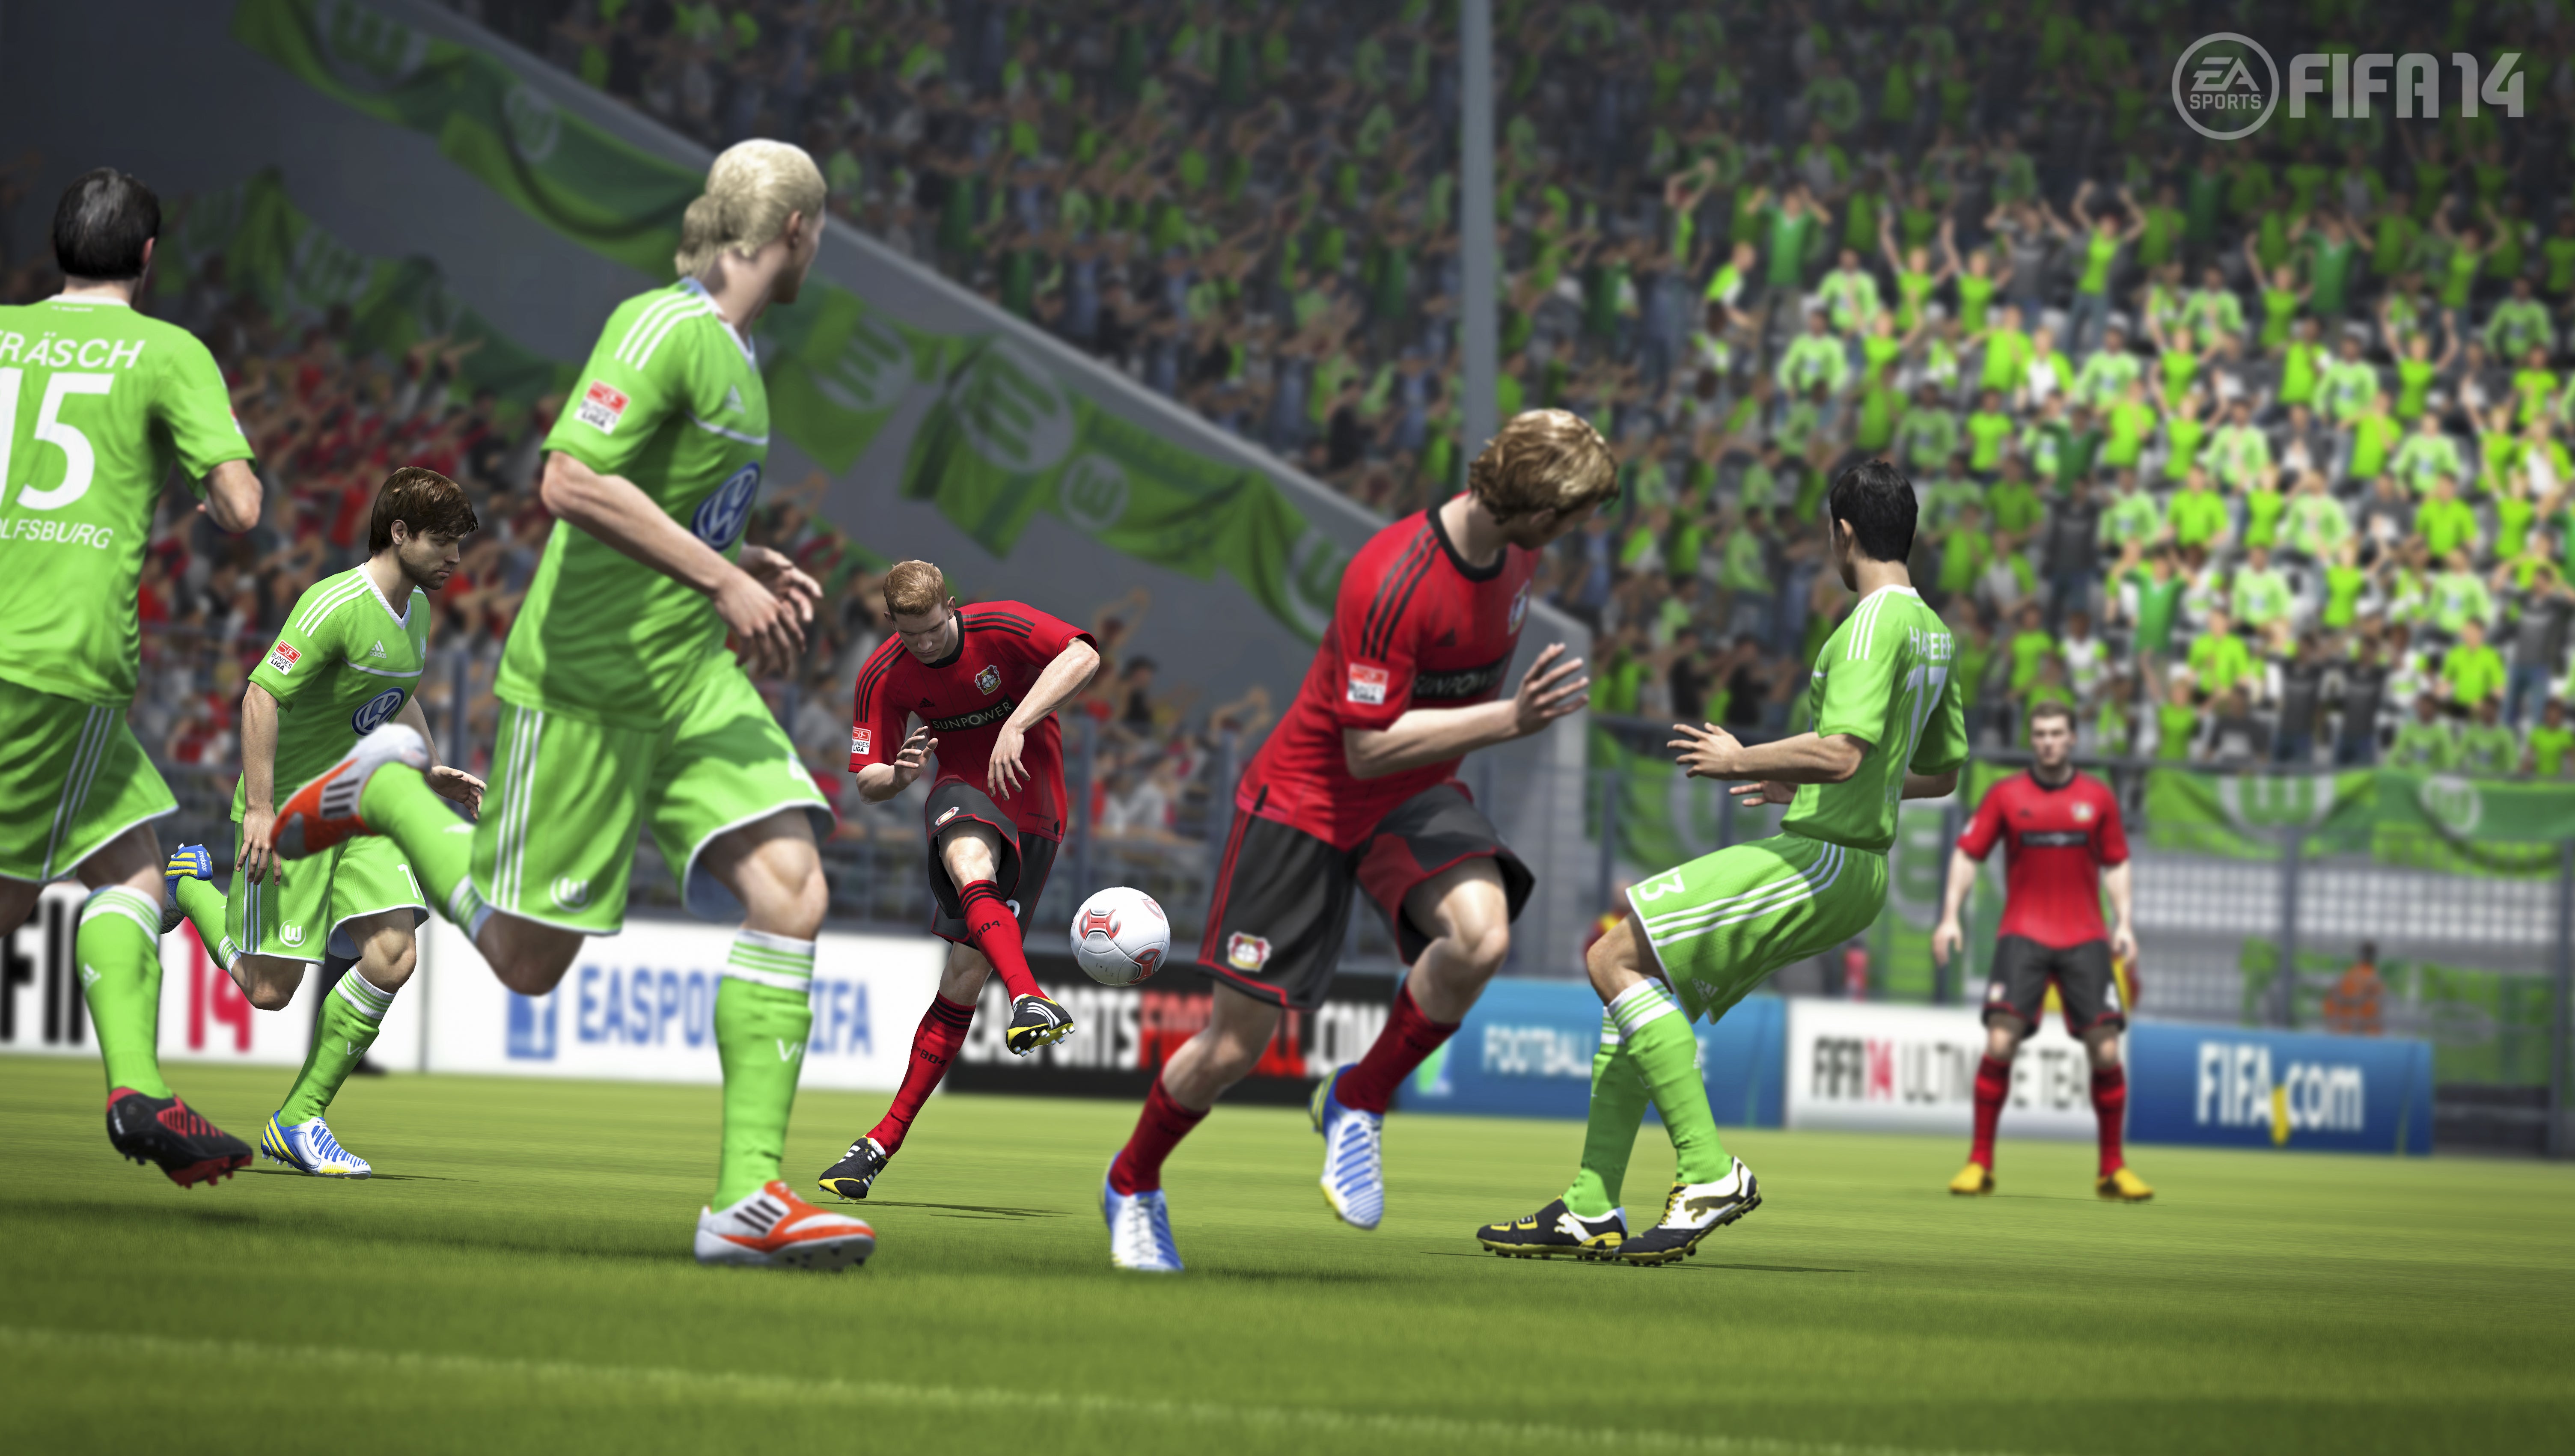 Fifa igruha. ФИФА 14 Xbox 360. 2014 FIFA World Cup (Xbox 360). FIFA 14 screenshots. FIFA 14 системные требования.